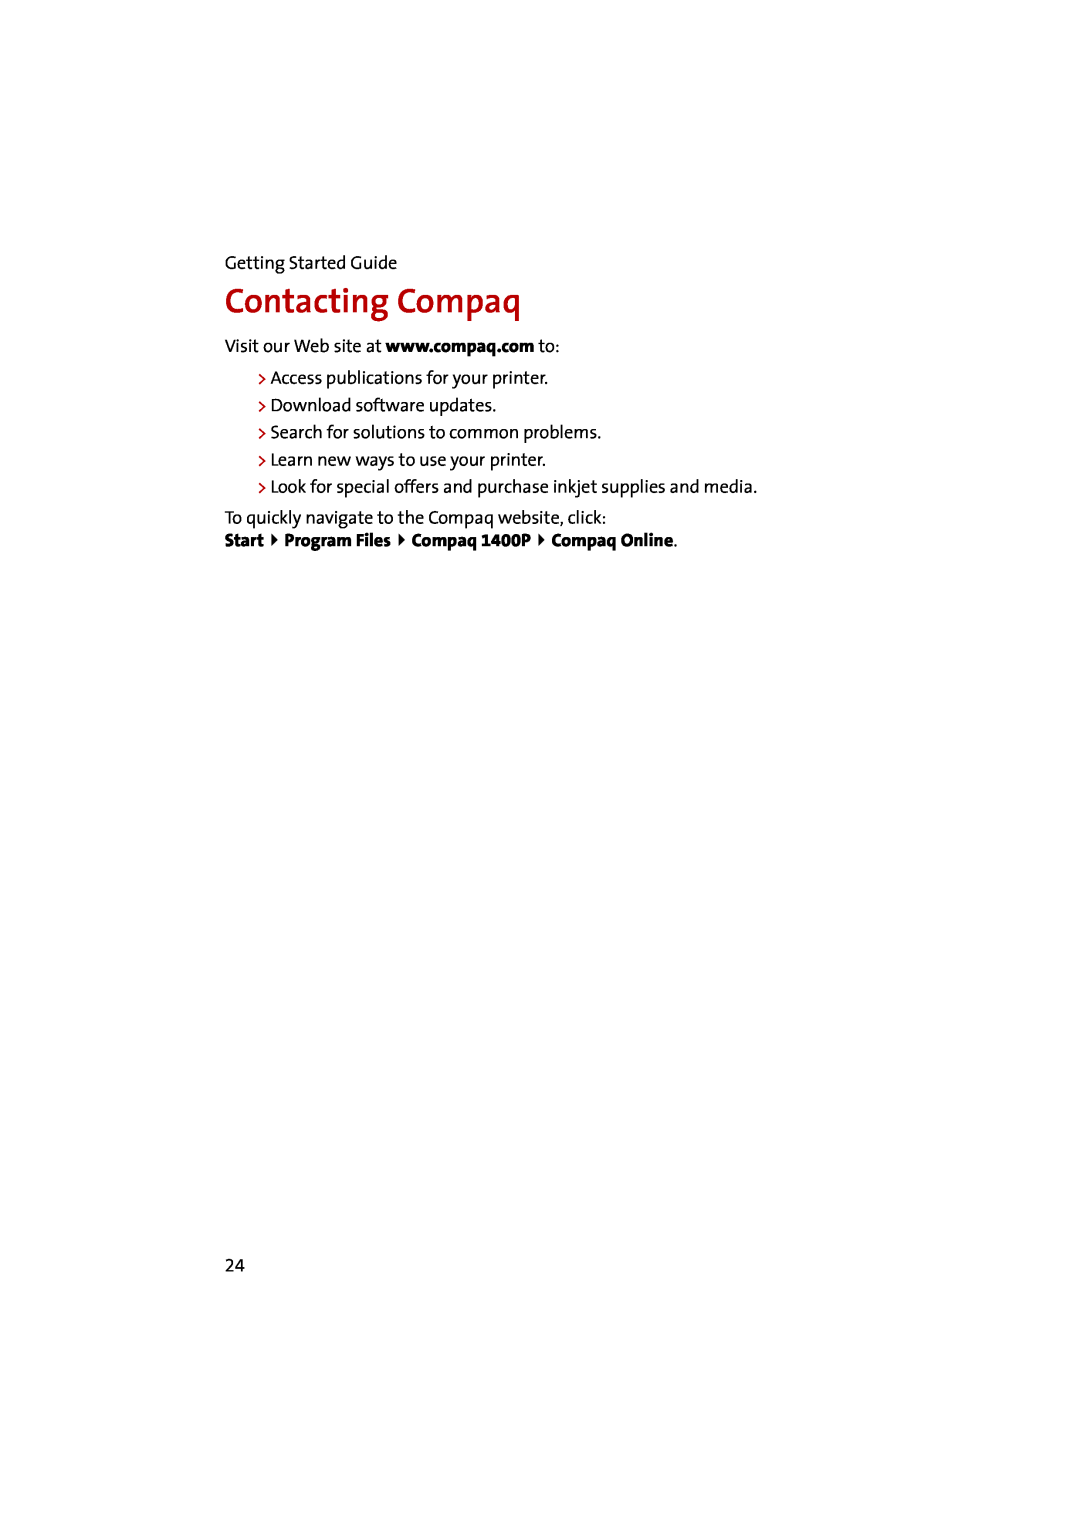 Compaq manual Contacting Compaq, Start Program Files Compaq 1400P Compaq Online 